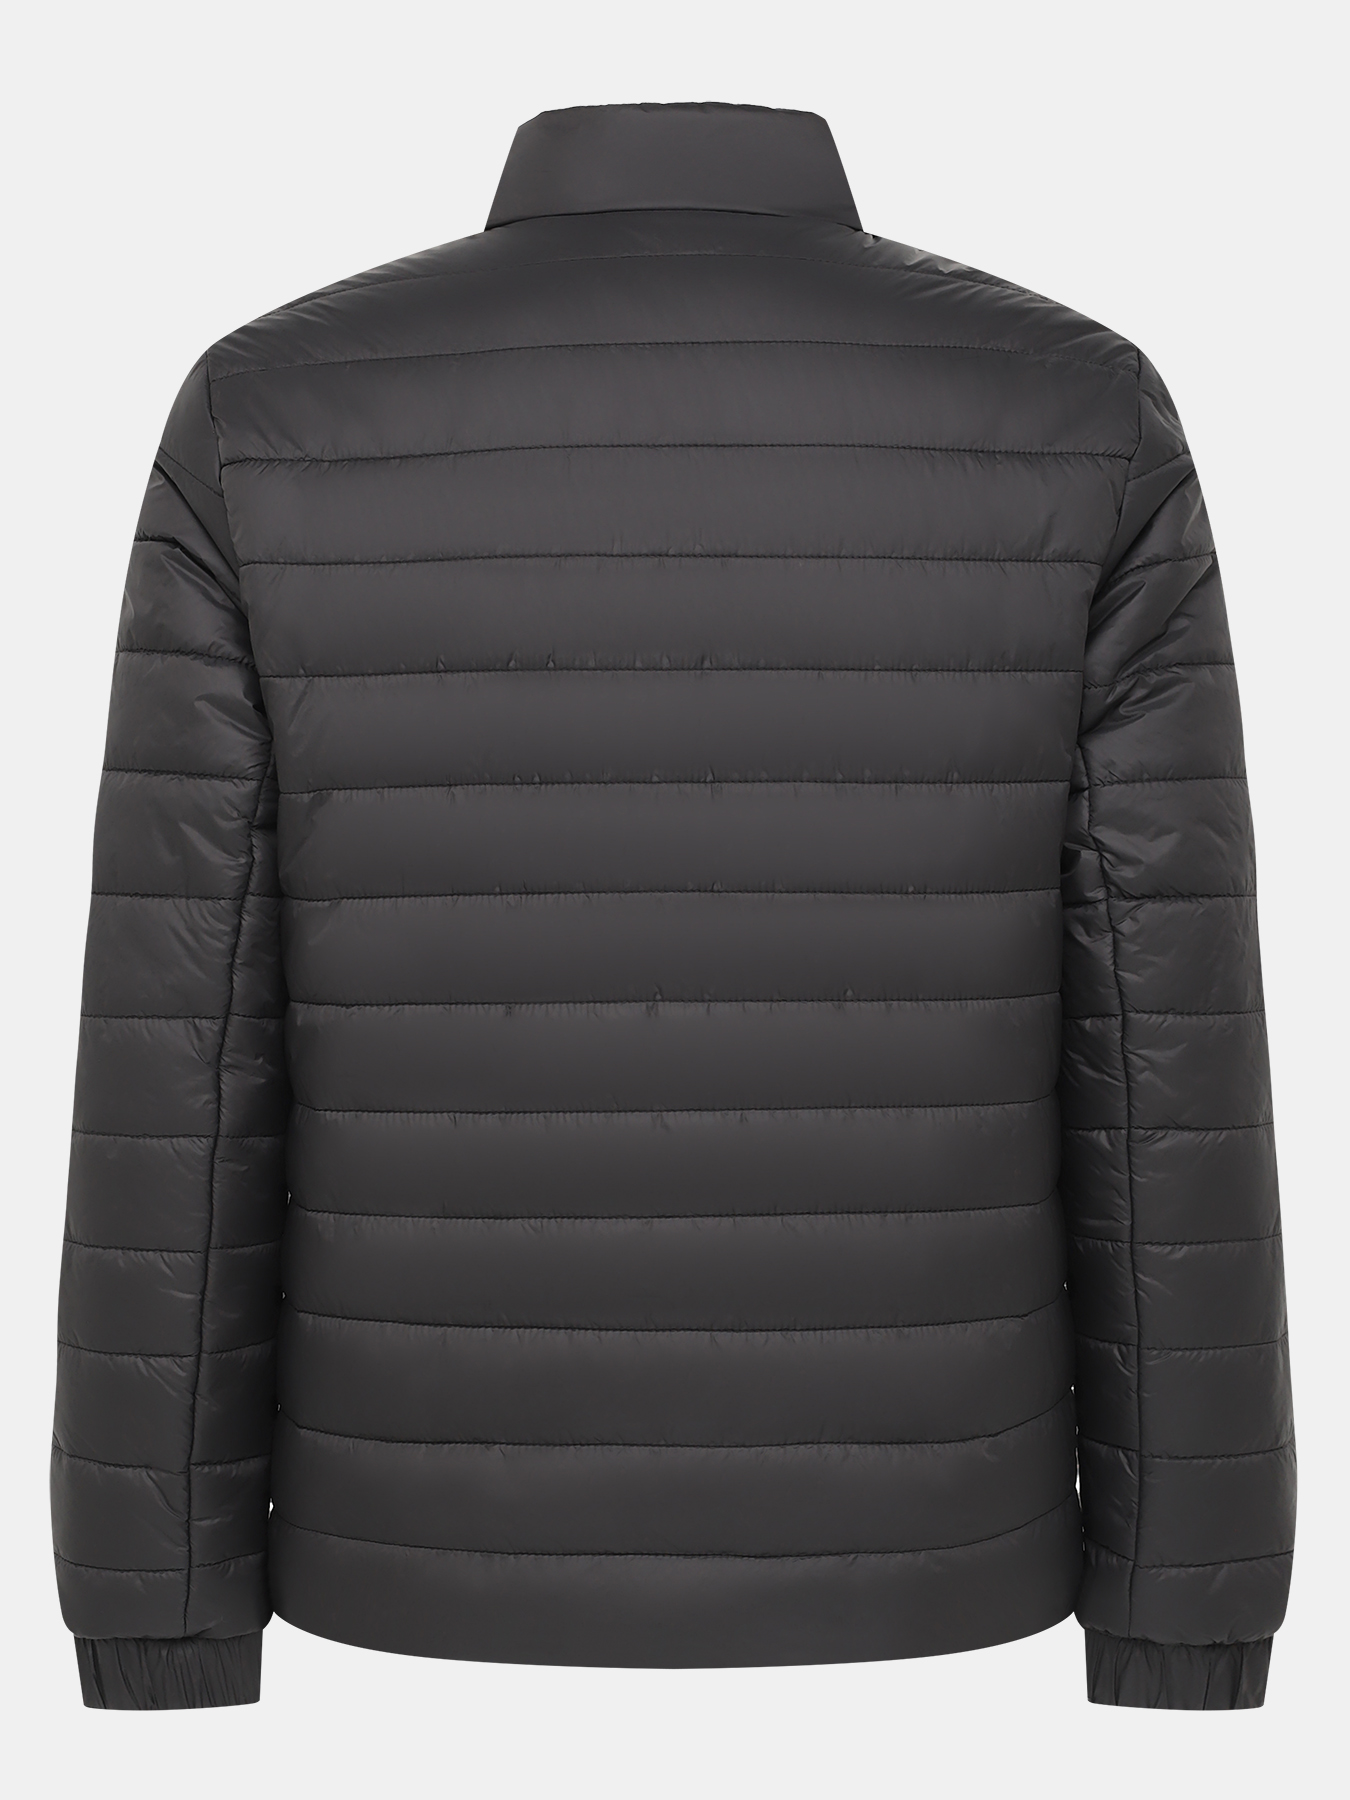 Куртка Benti HUGO 434502-046, цвет черный, размер 54-56 - фото 3